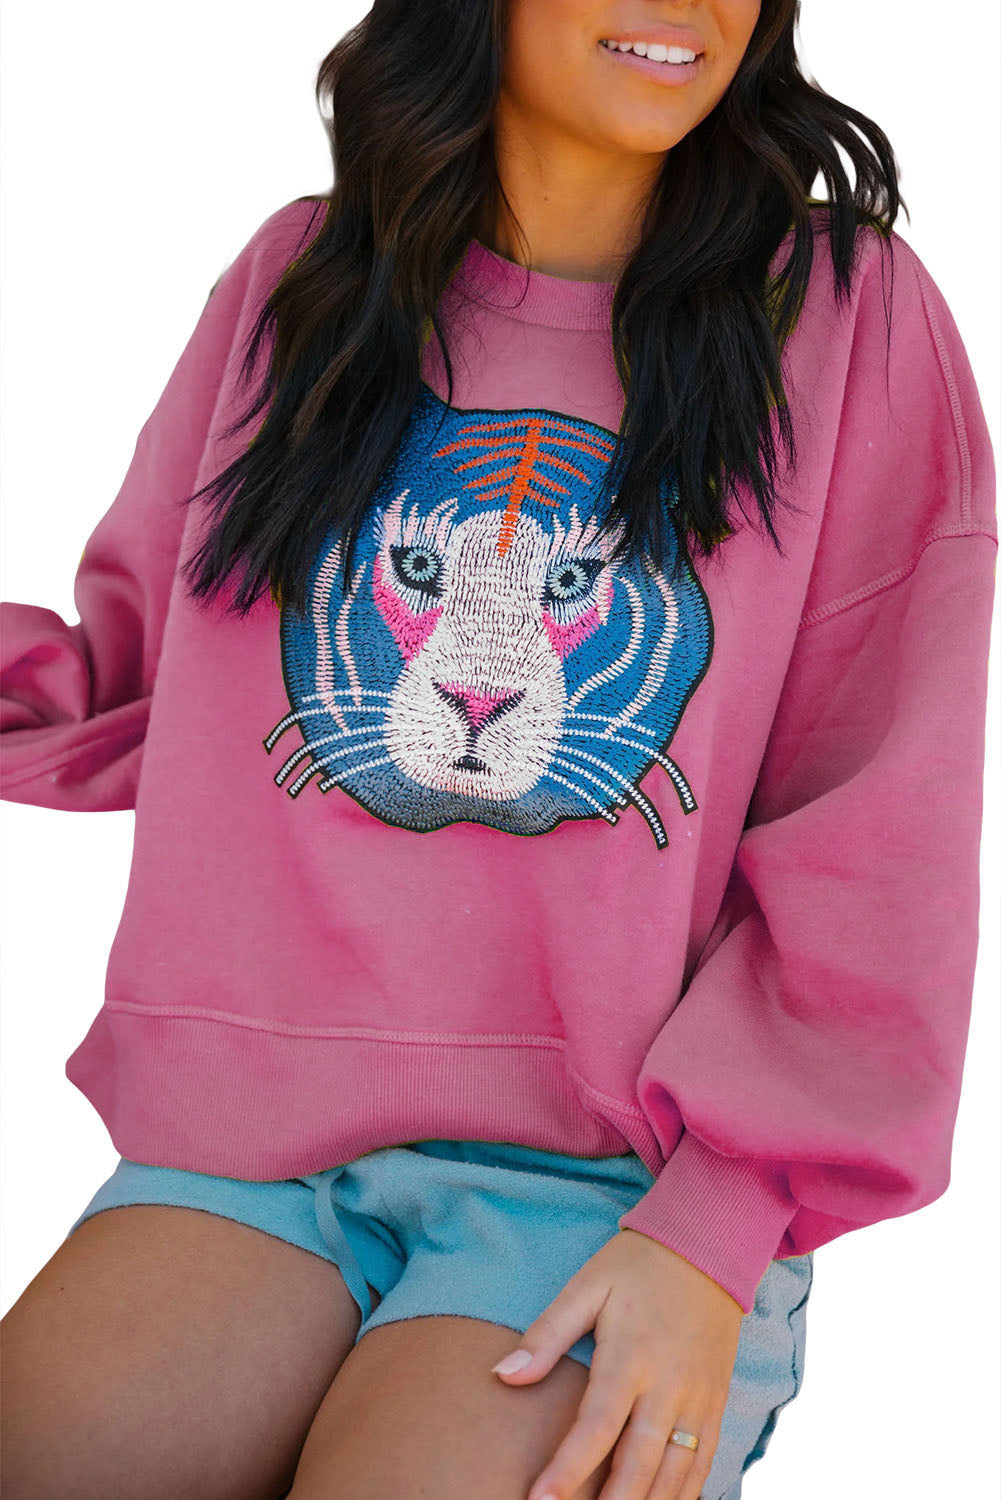 Ležerna majica s izvezenim ružičastim tigrom